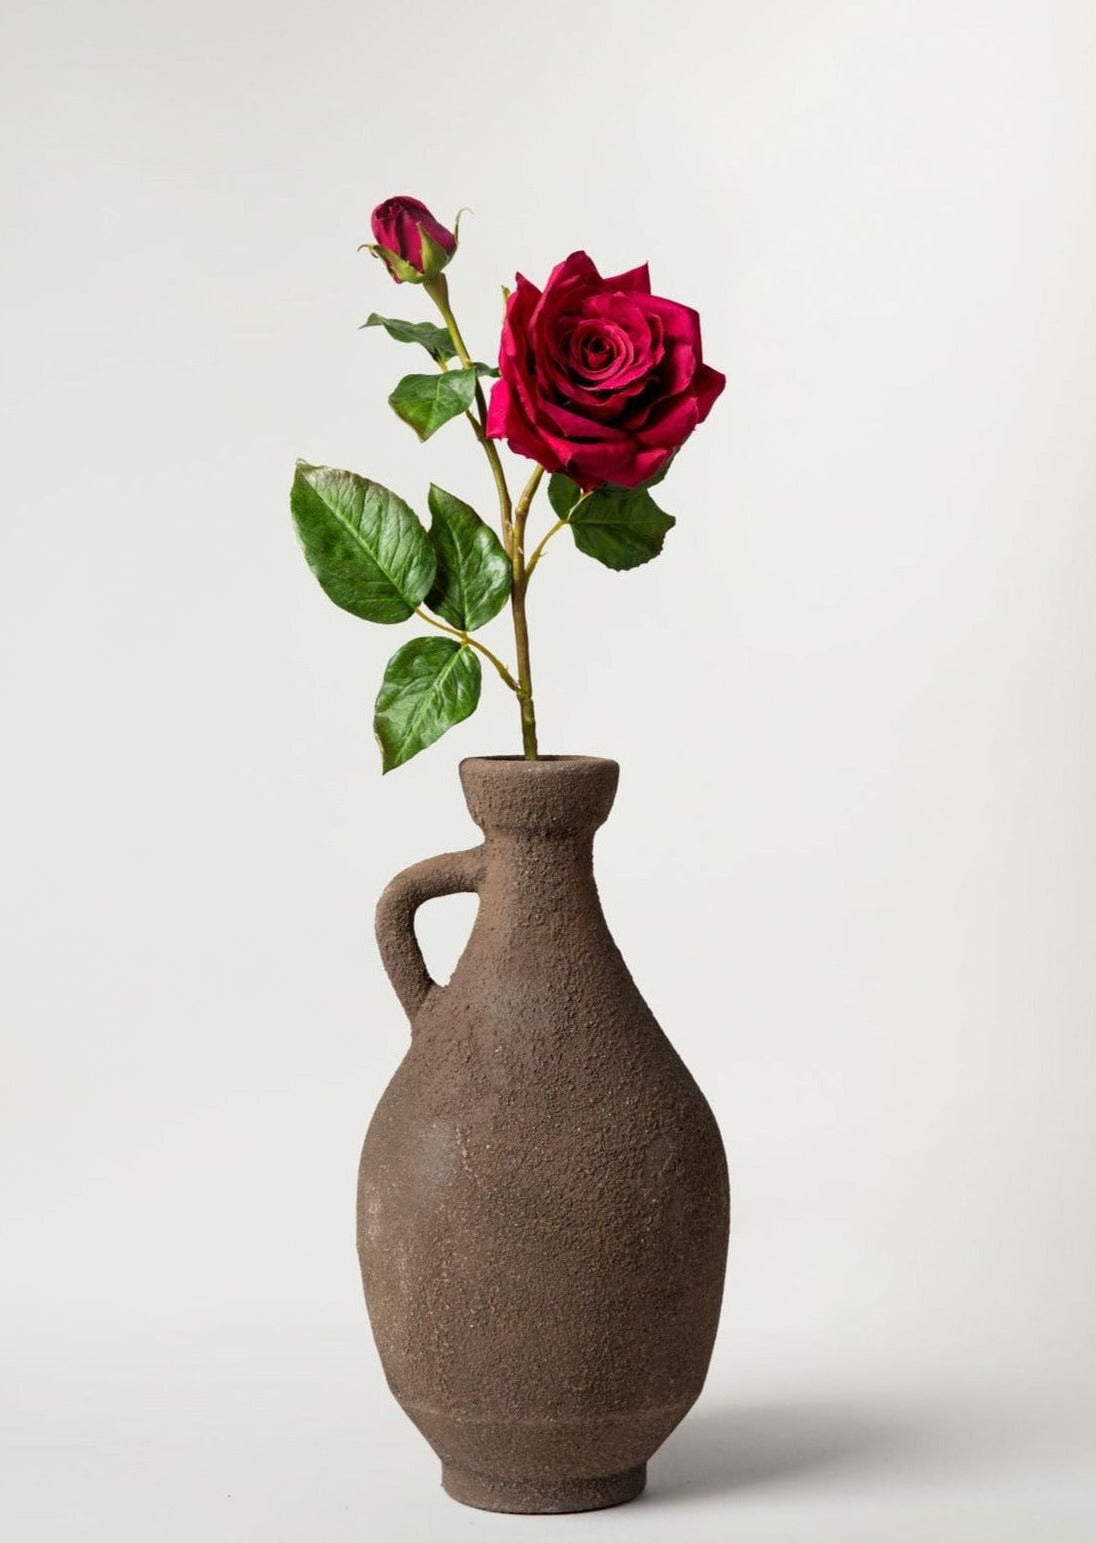 Distressed Travertine Bud Vase - Large